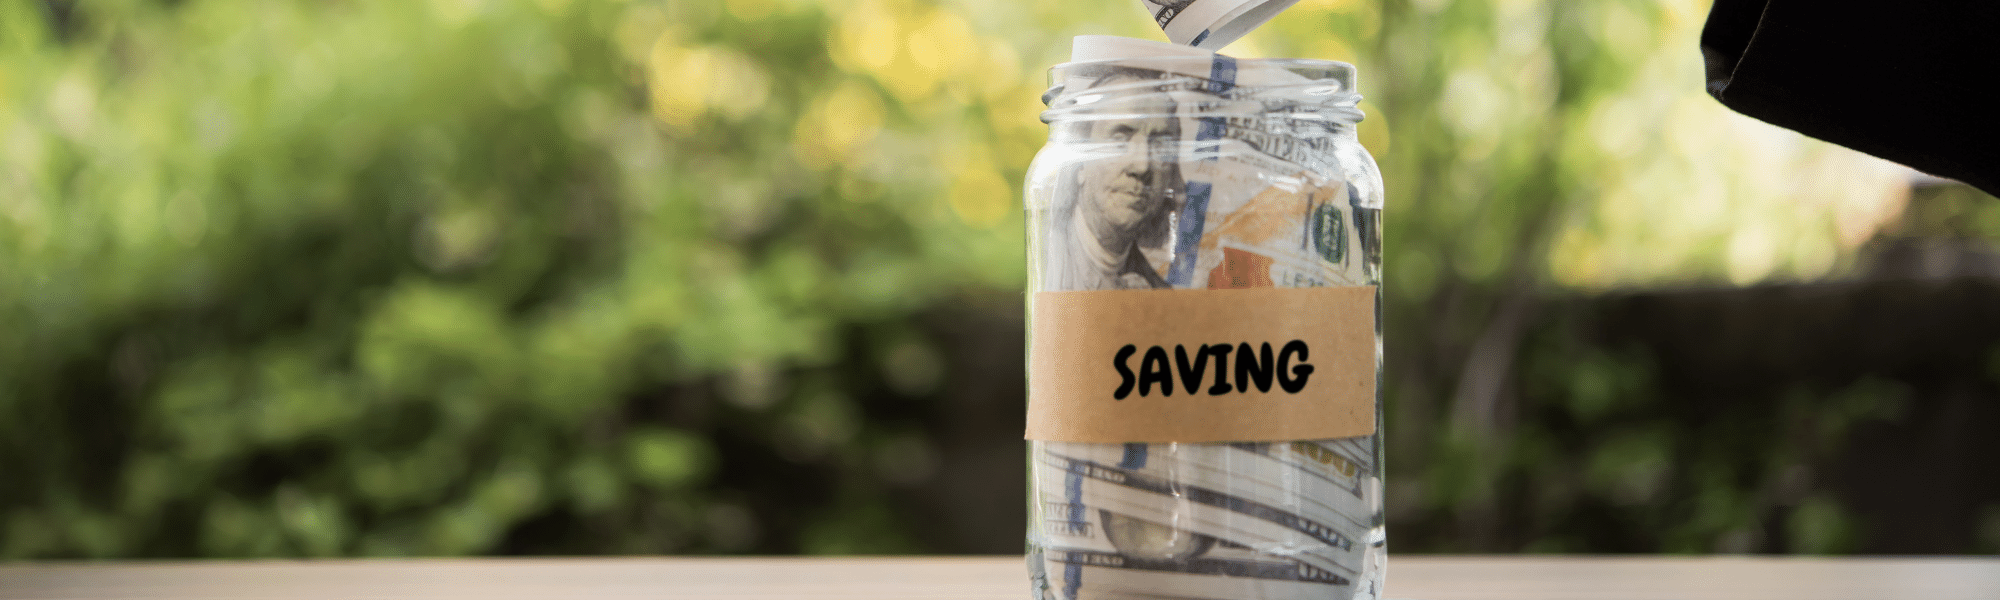 jar of money savings